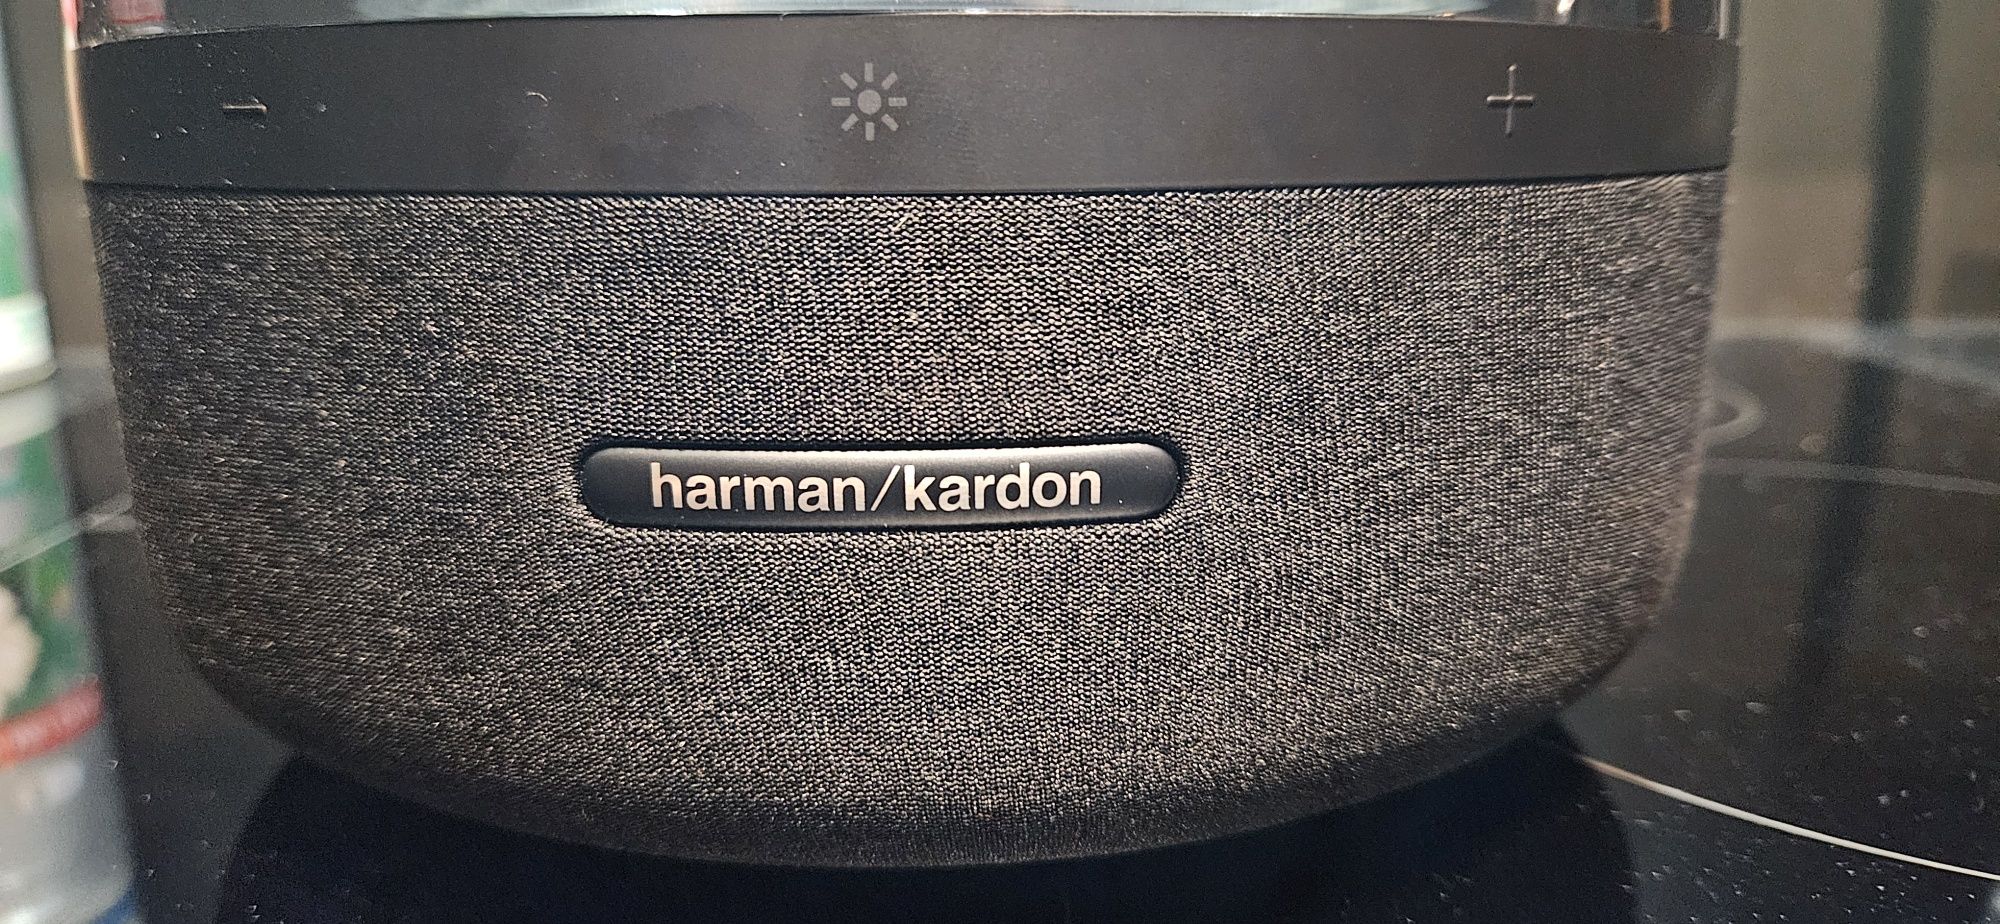 Harman Kardon Aura Studio 3